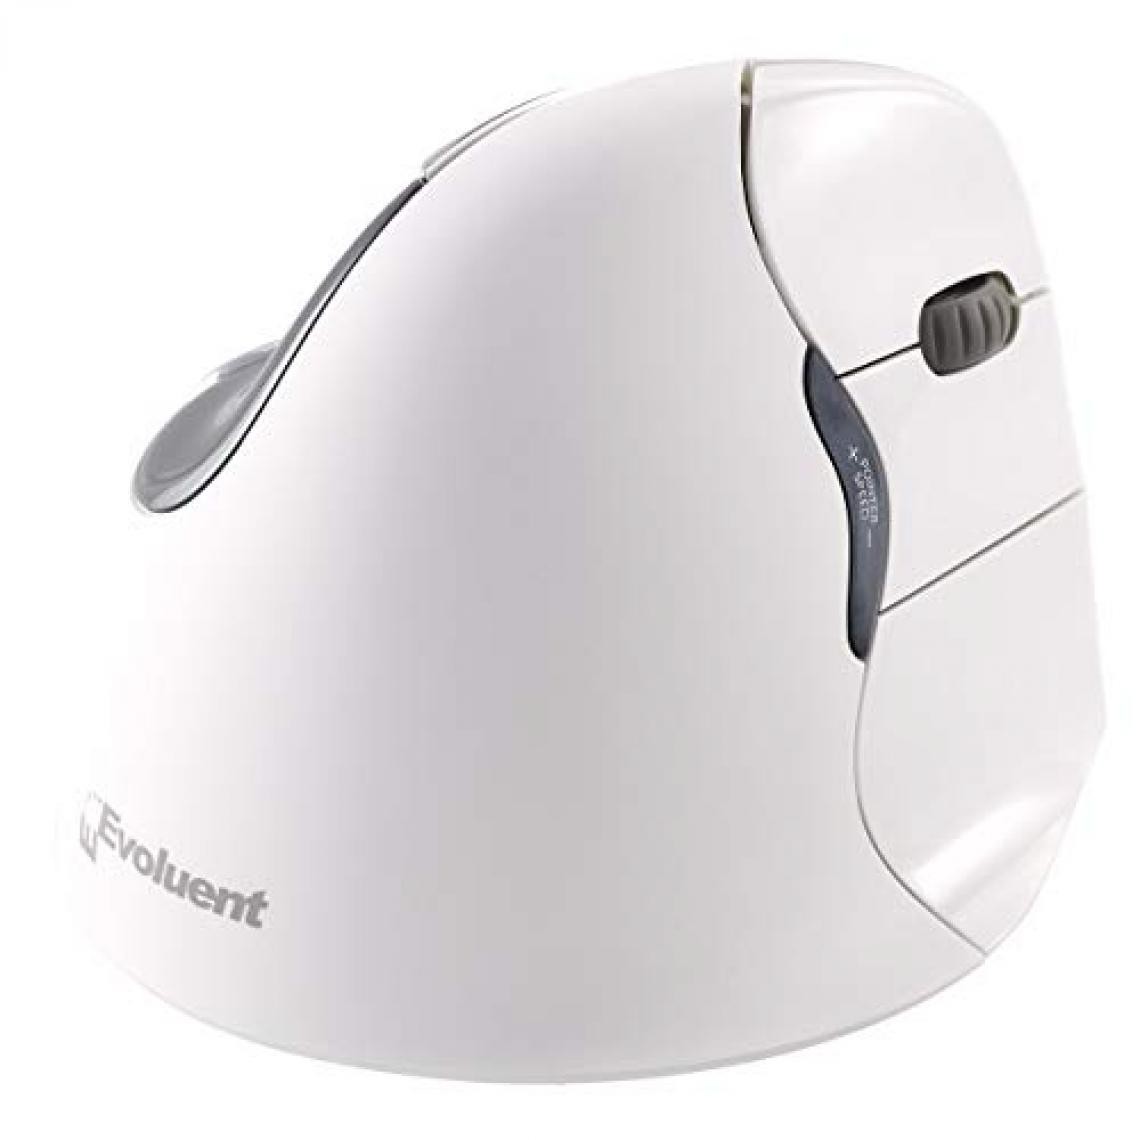 Evoluent - Souris sans fil Bluetooth Vertical Mouse 4 pour droitier (Blanc) - Souris